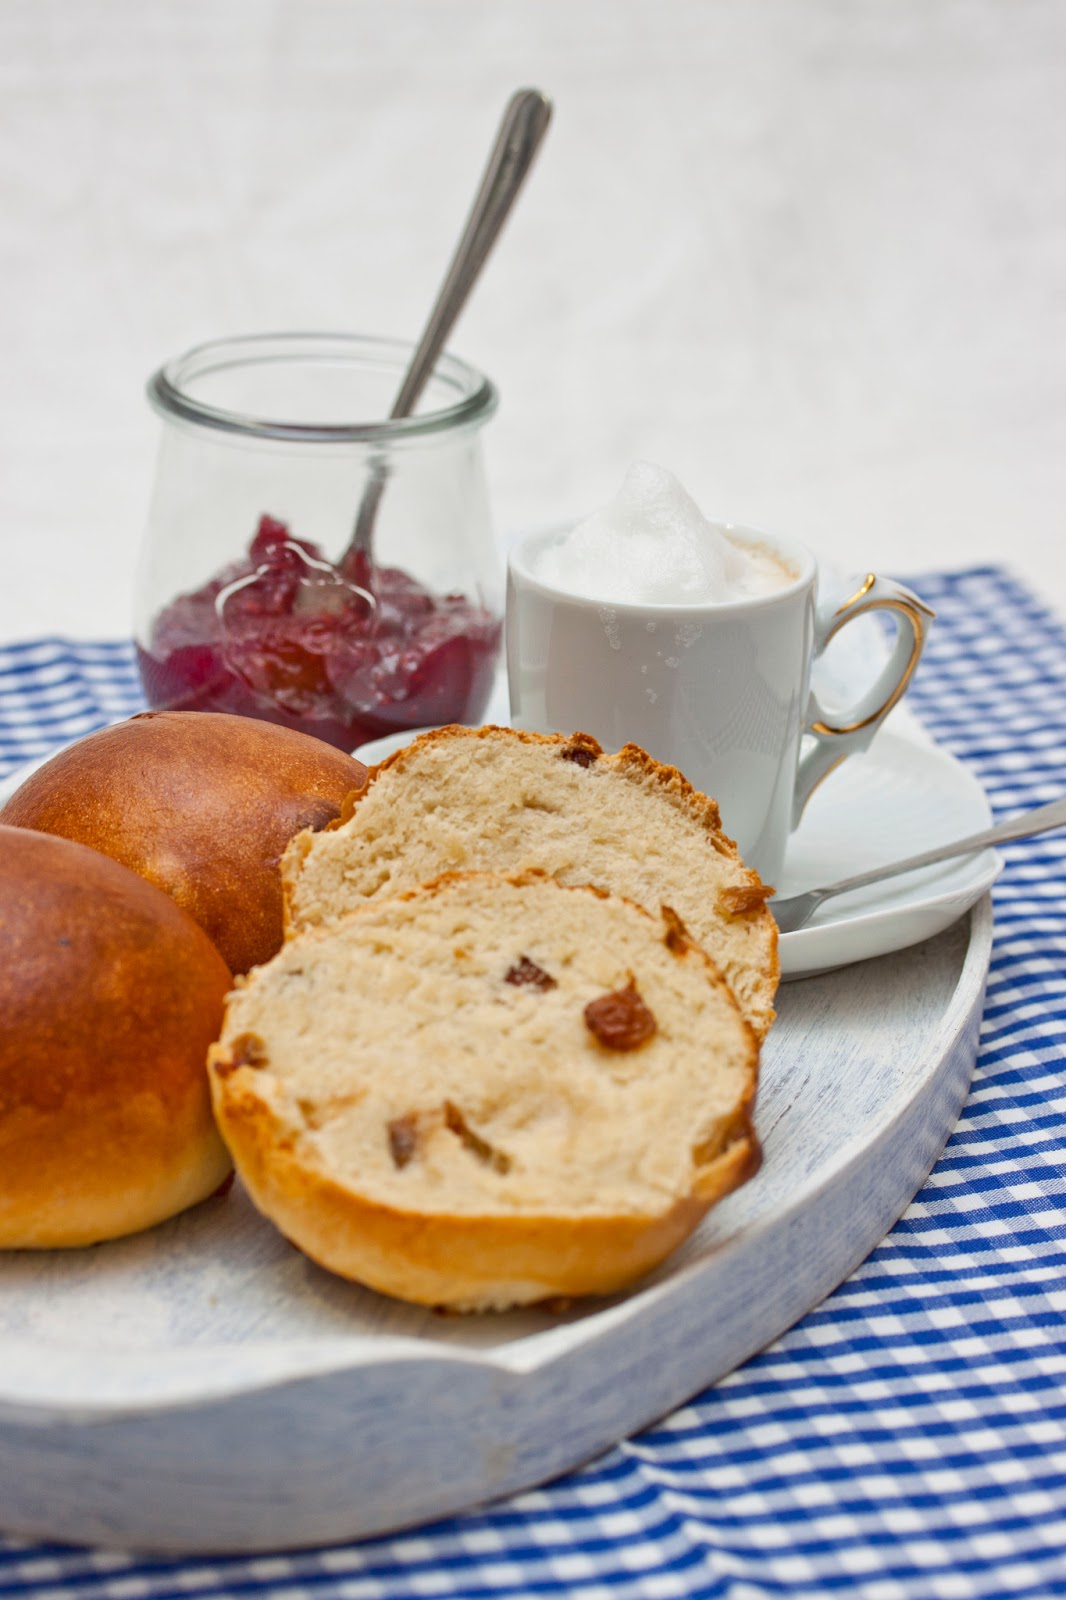 Annetts kulinarisches Tagebuch: Ideen für das perfekte Frühstück ...